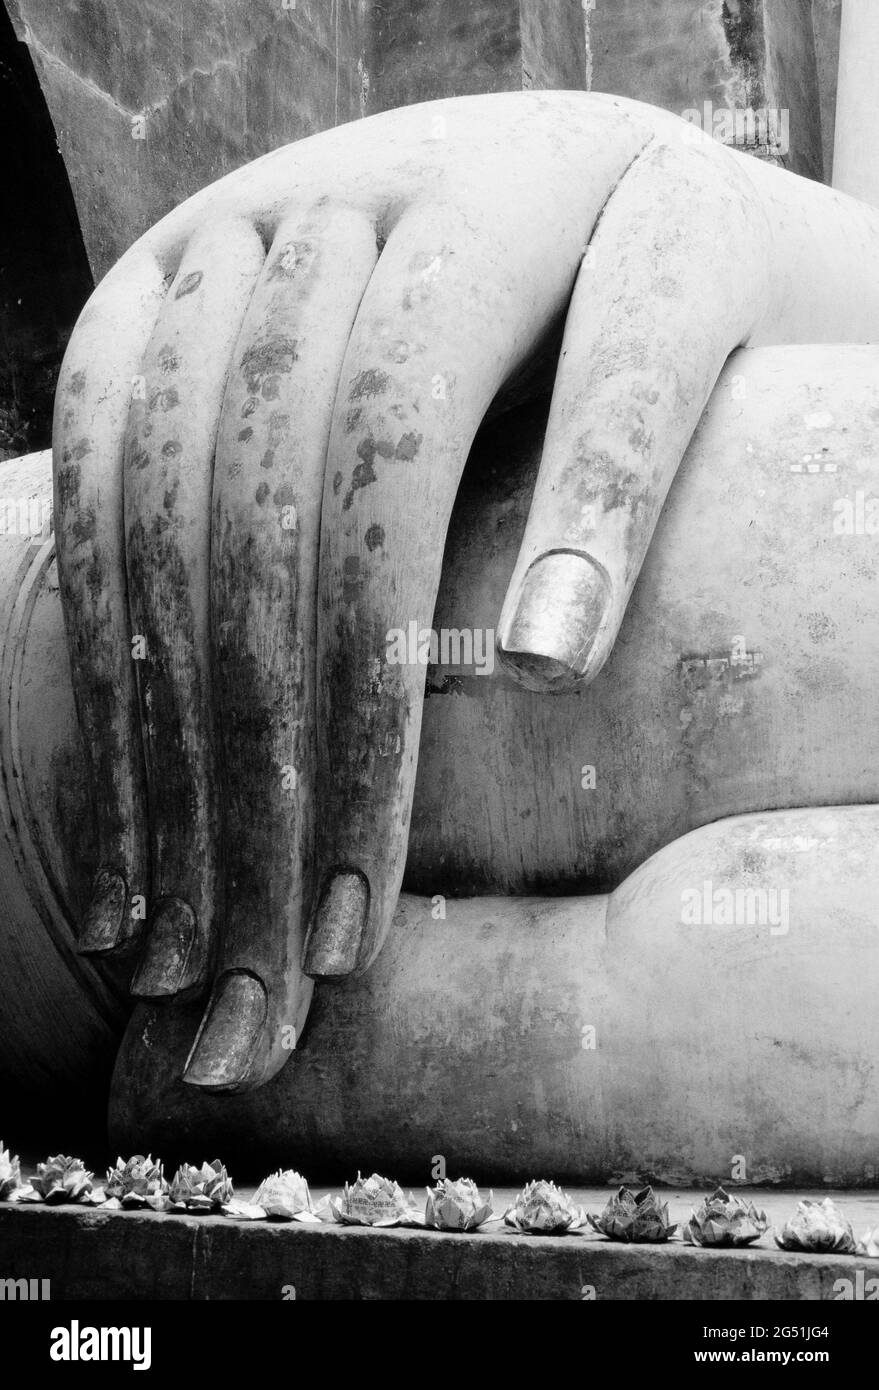 Gros plan de la main de la statue de Bouddha, Temple si CHUM, Parc historique de Sukhothai, Thaïlande Banque D'Images